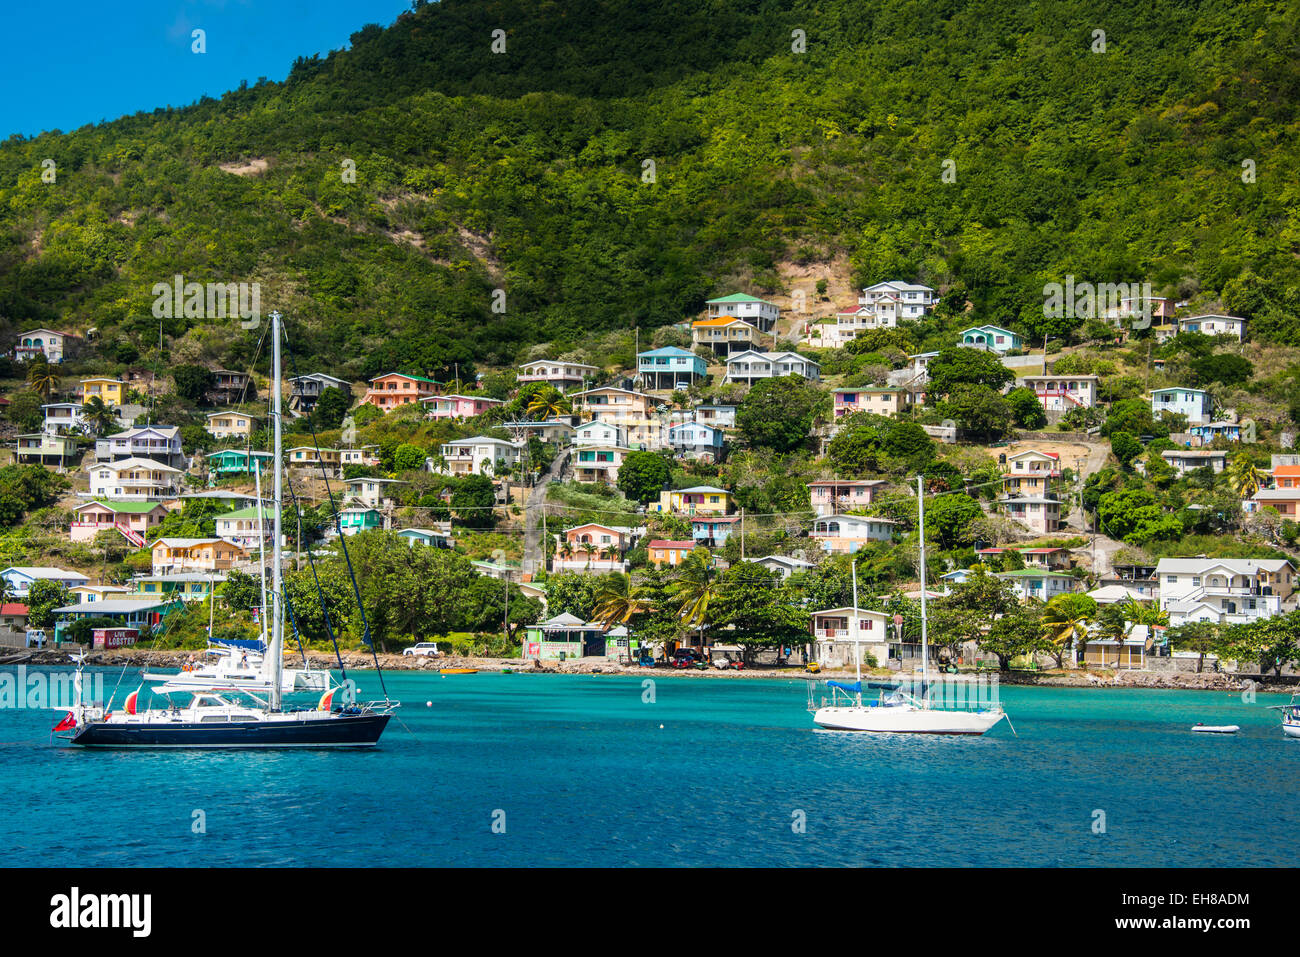 L'ancrage des bateaux à voile à Port Elizabeth, Admiralty Bay, Bequia, Grenadines, Iles du Vent, Antilles, Caraïbes Banque D'Images